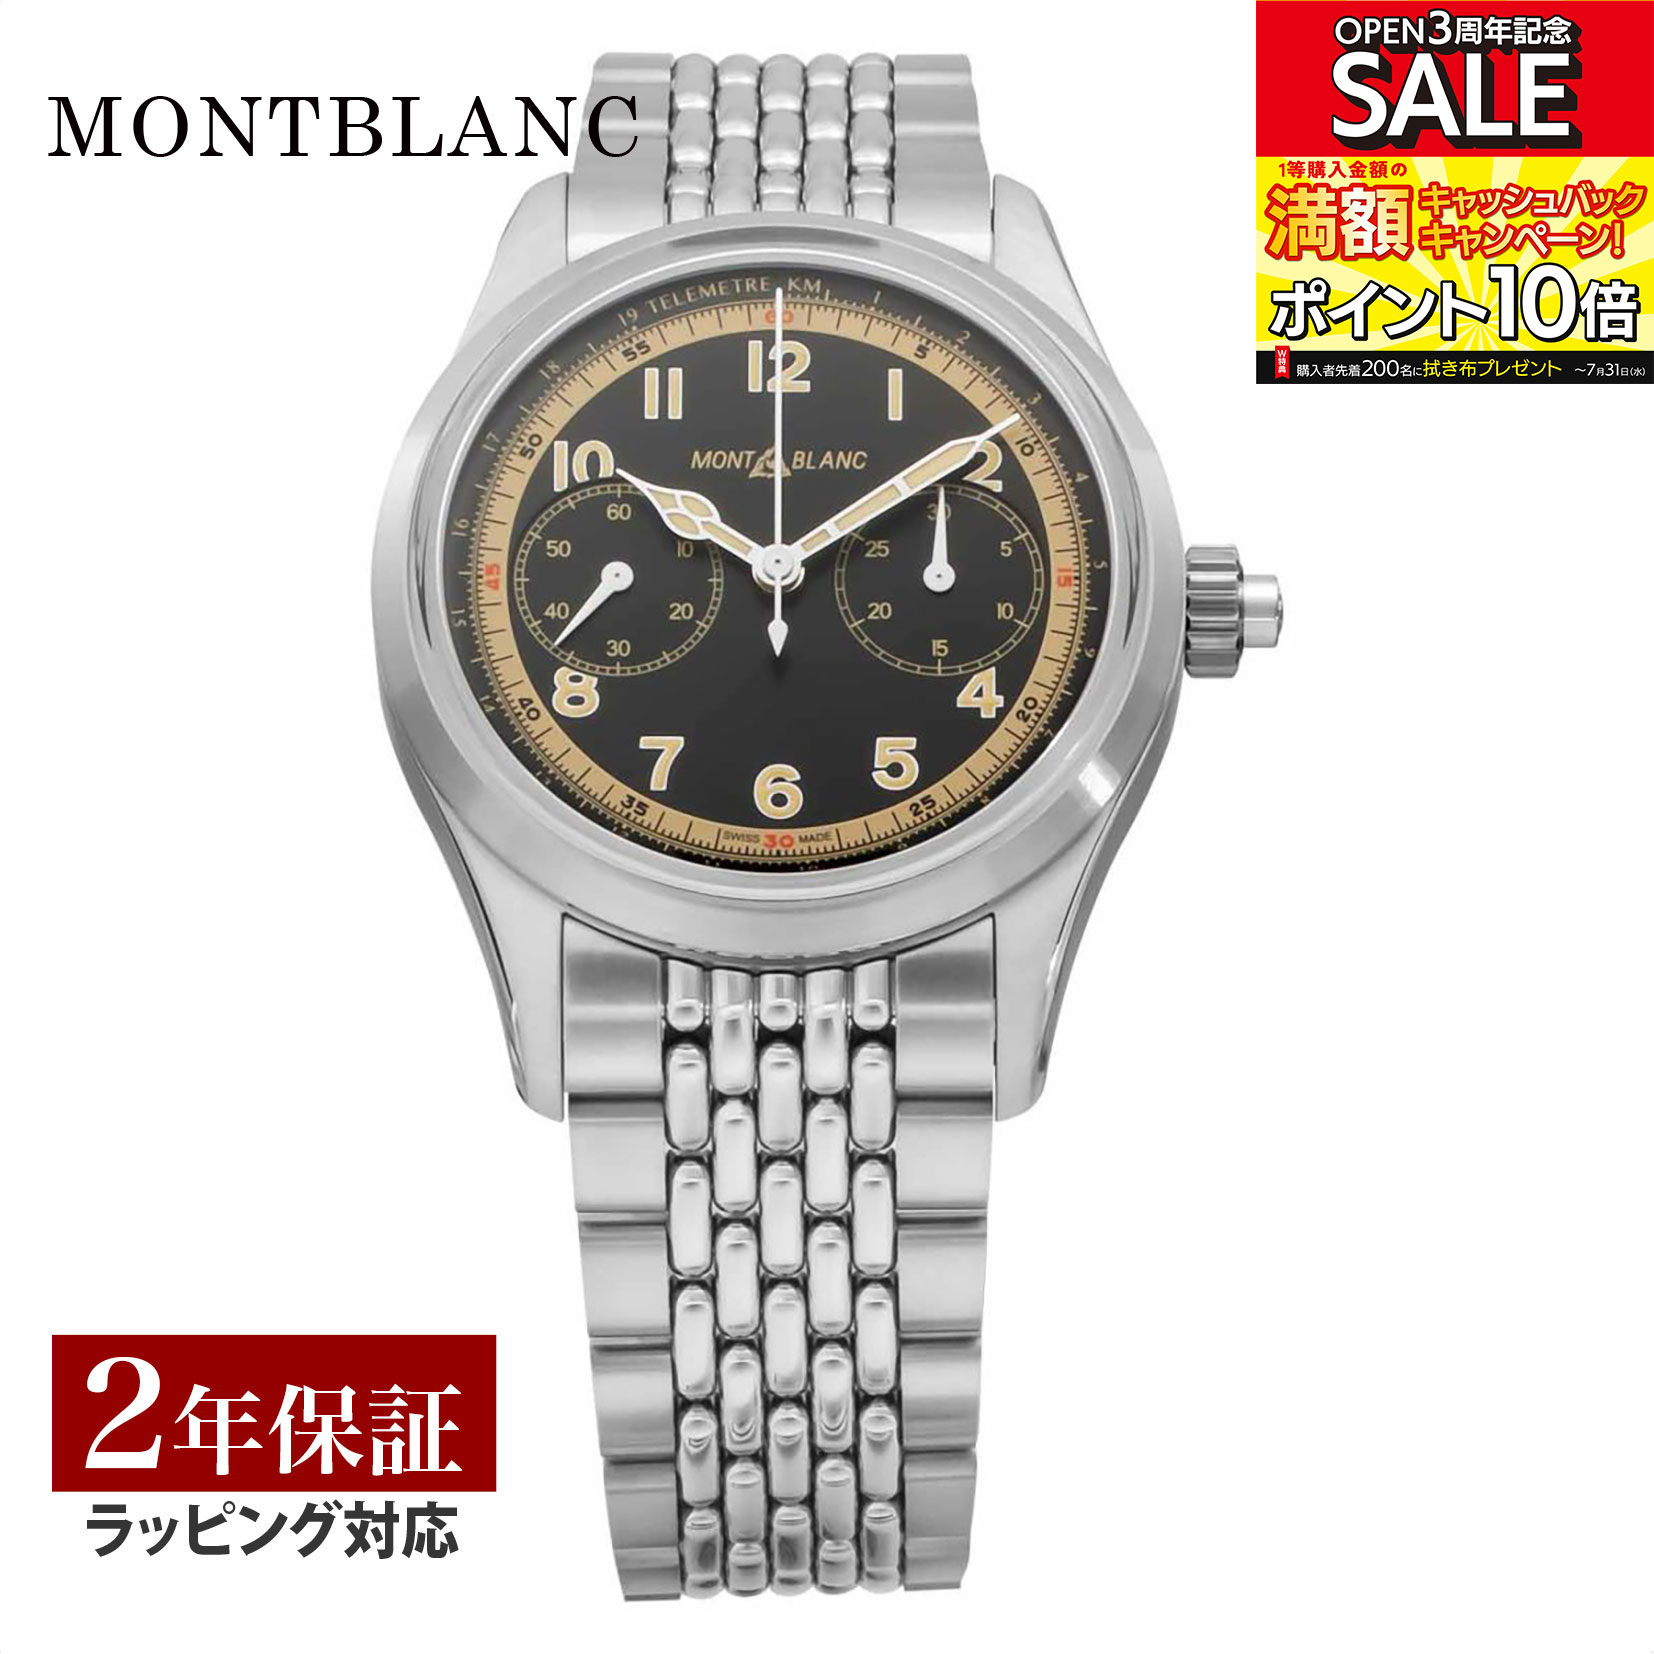 モンブラン Montblanc メンズ 時計 1858 自動巻 ブラック 125582 時計 腕時計 高級腕時計 ブランド